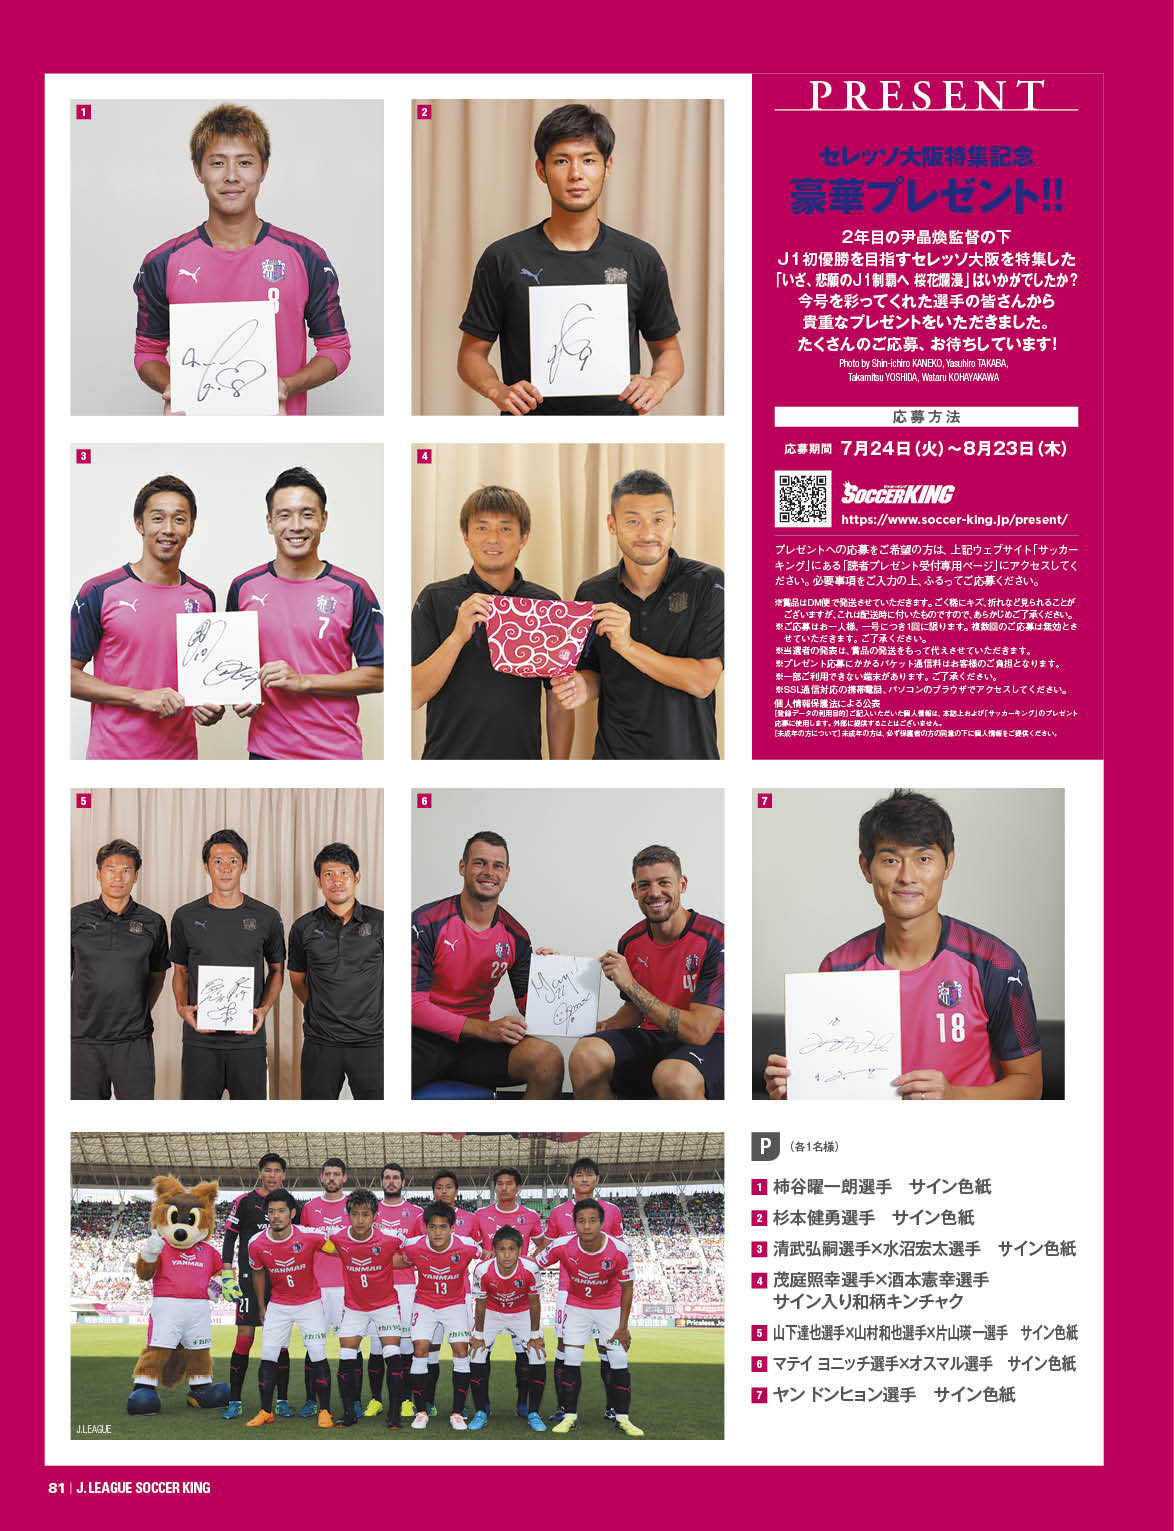 7 24発売 Jリーグサッカーキング9月号 読者プレゼント サッカーキング